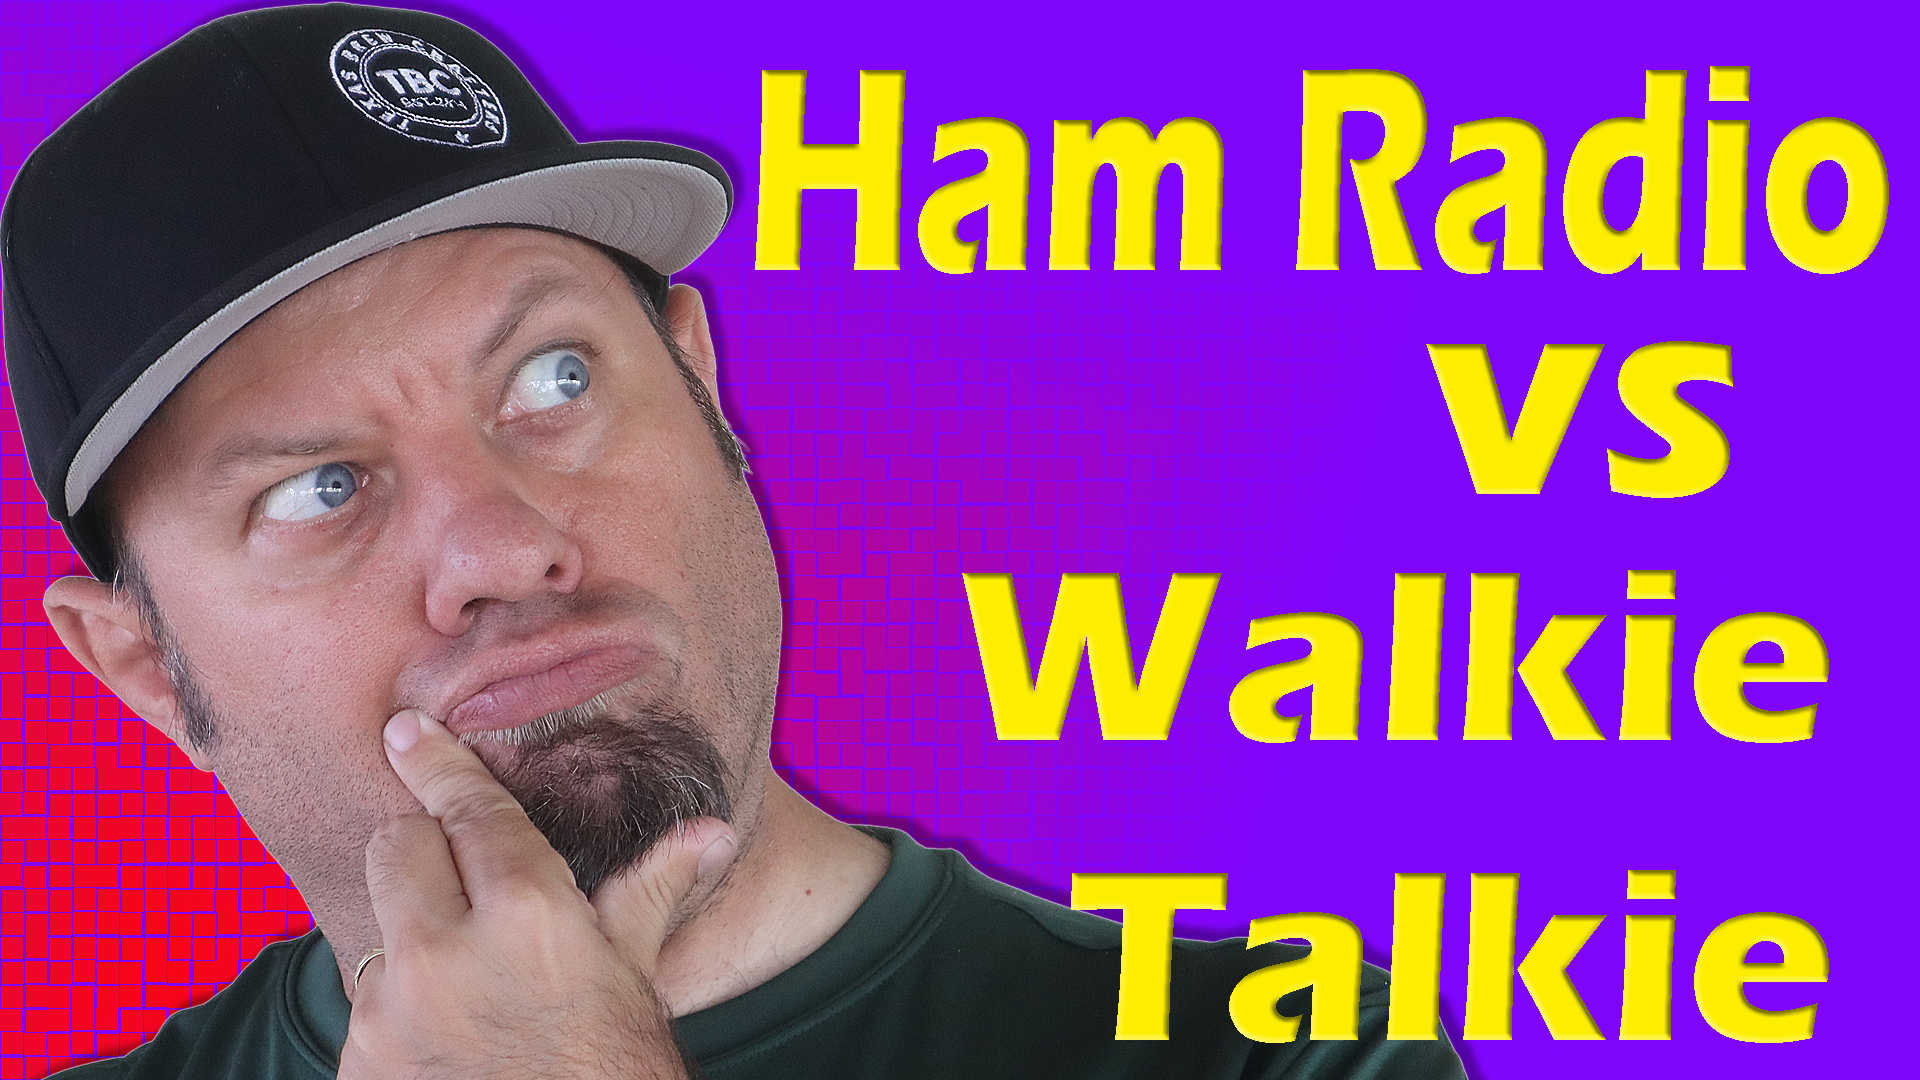 Episode 560: Ham Radio vs Walkie Talkie | Handheld Ham Radio Comparison